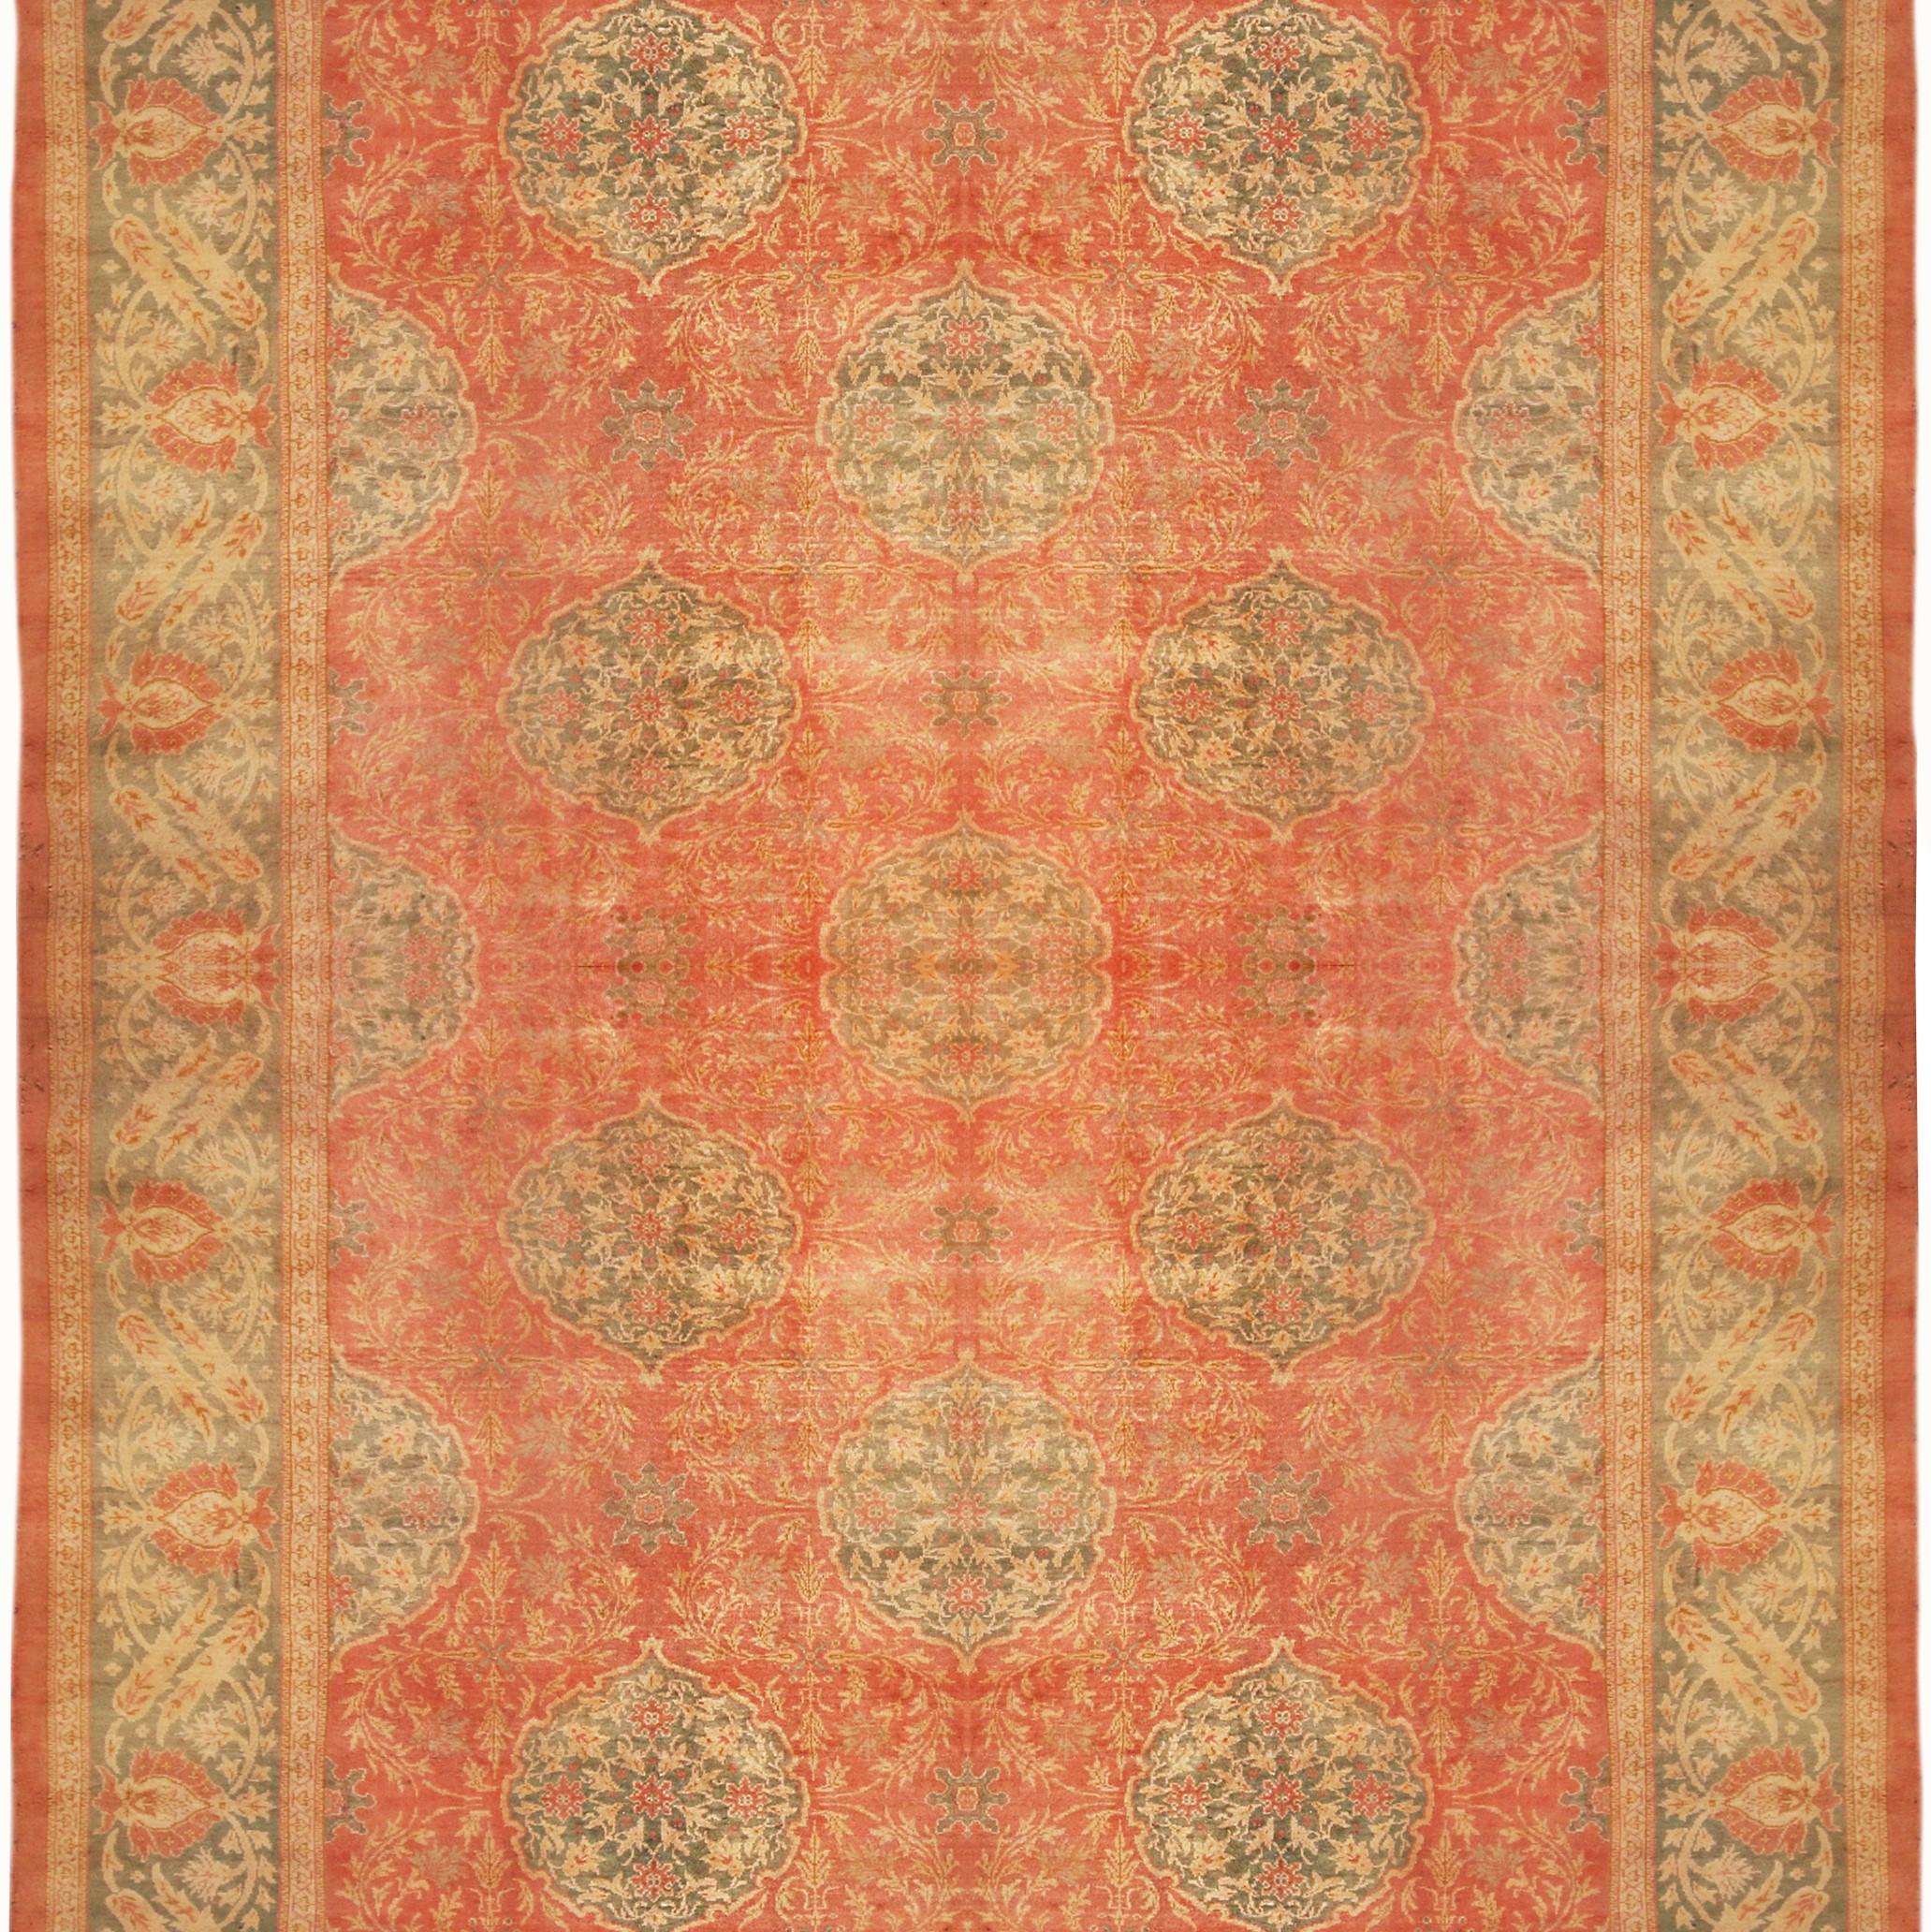 Noué à la main en laine et originaire de Turquie vers 1890-1900, ce tapis ancien évoque un modèle unique de tapis Oushak de transition, particulièrement rare dans sa grande taille (12 x 17) et ses couleurs - riches teintes de rouge et de vert au